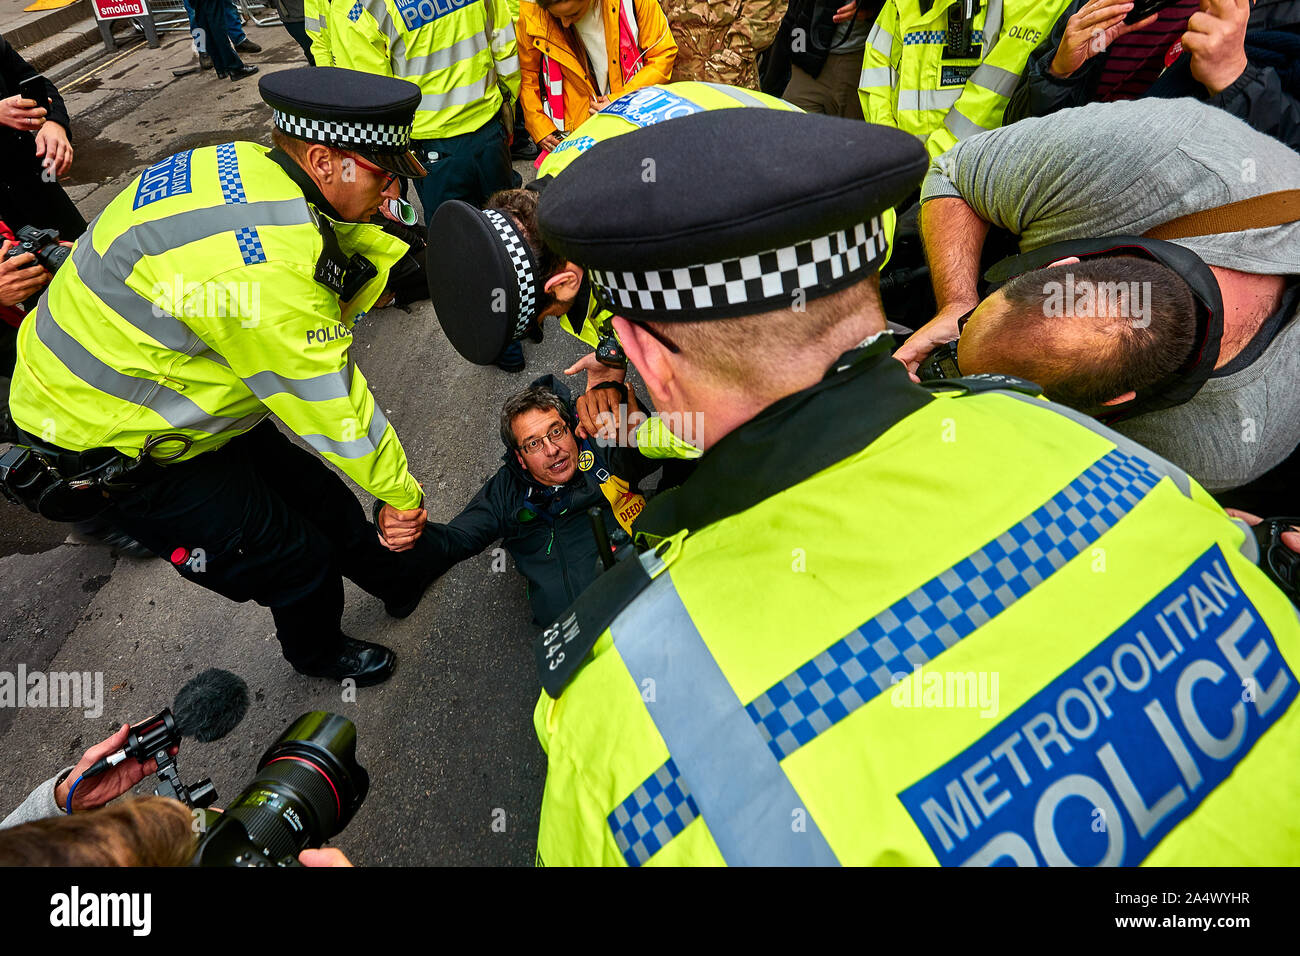 Londres, Reino Unido - 16 Oct, 2019: activista ambiental George Monbiot en el medio de los medios y la policía scrum antes de ser arrestado en Trafalgar Square. Foto de stock